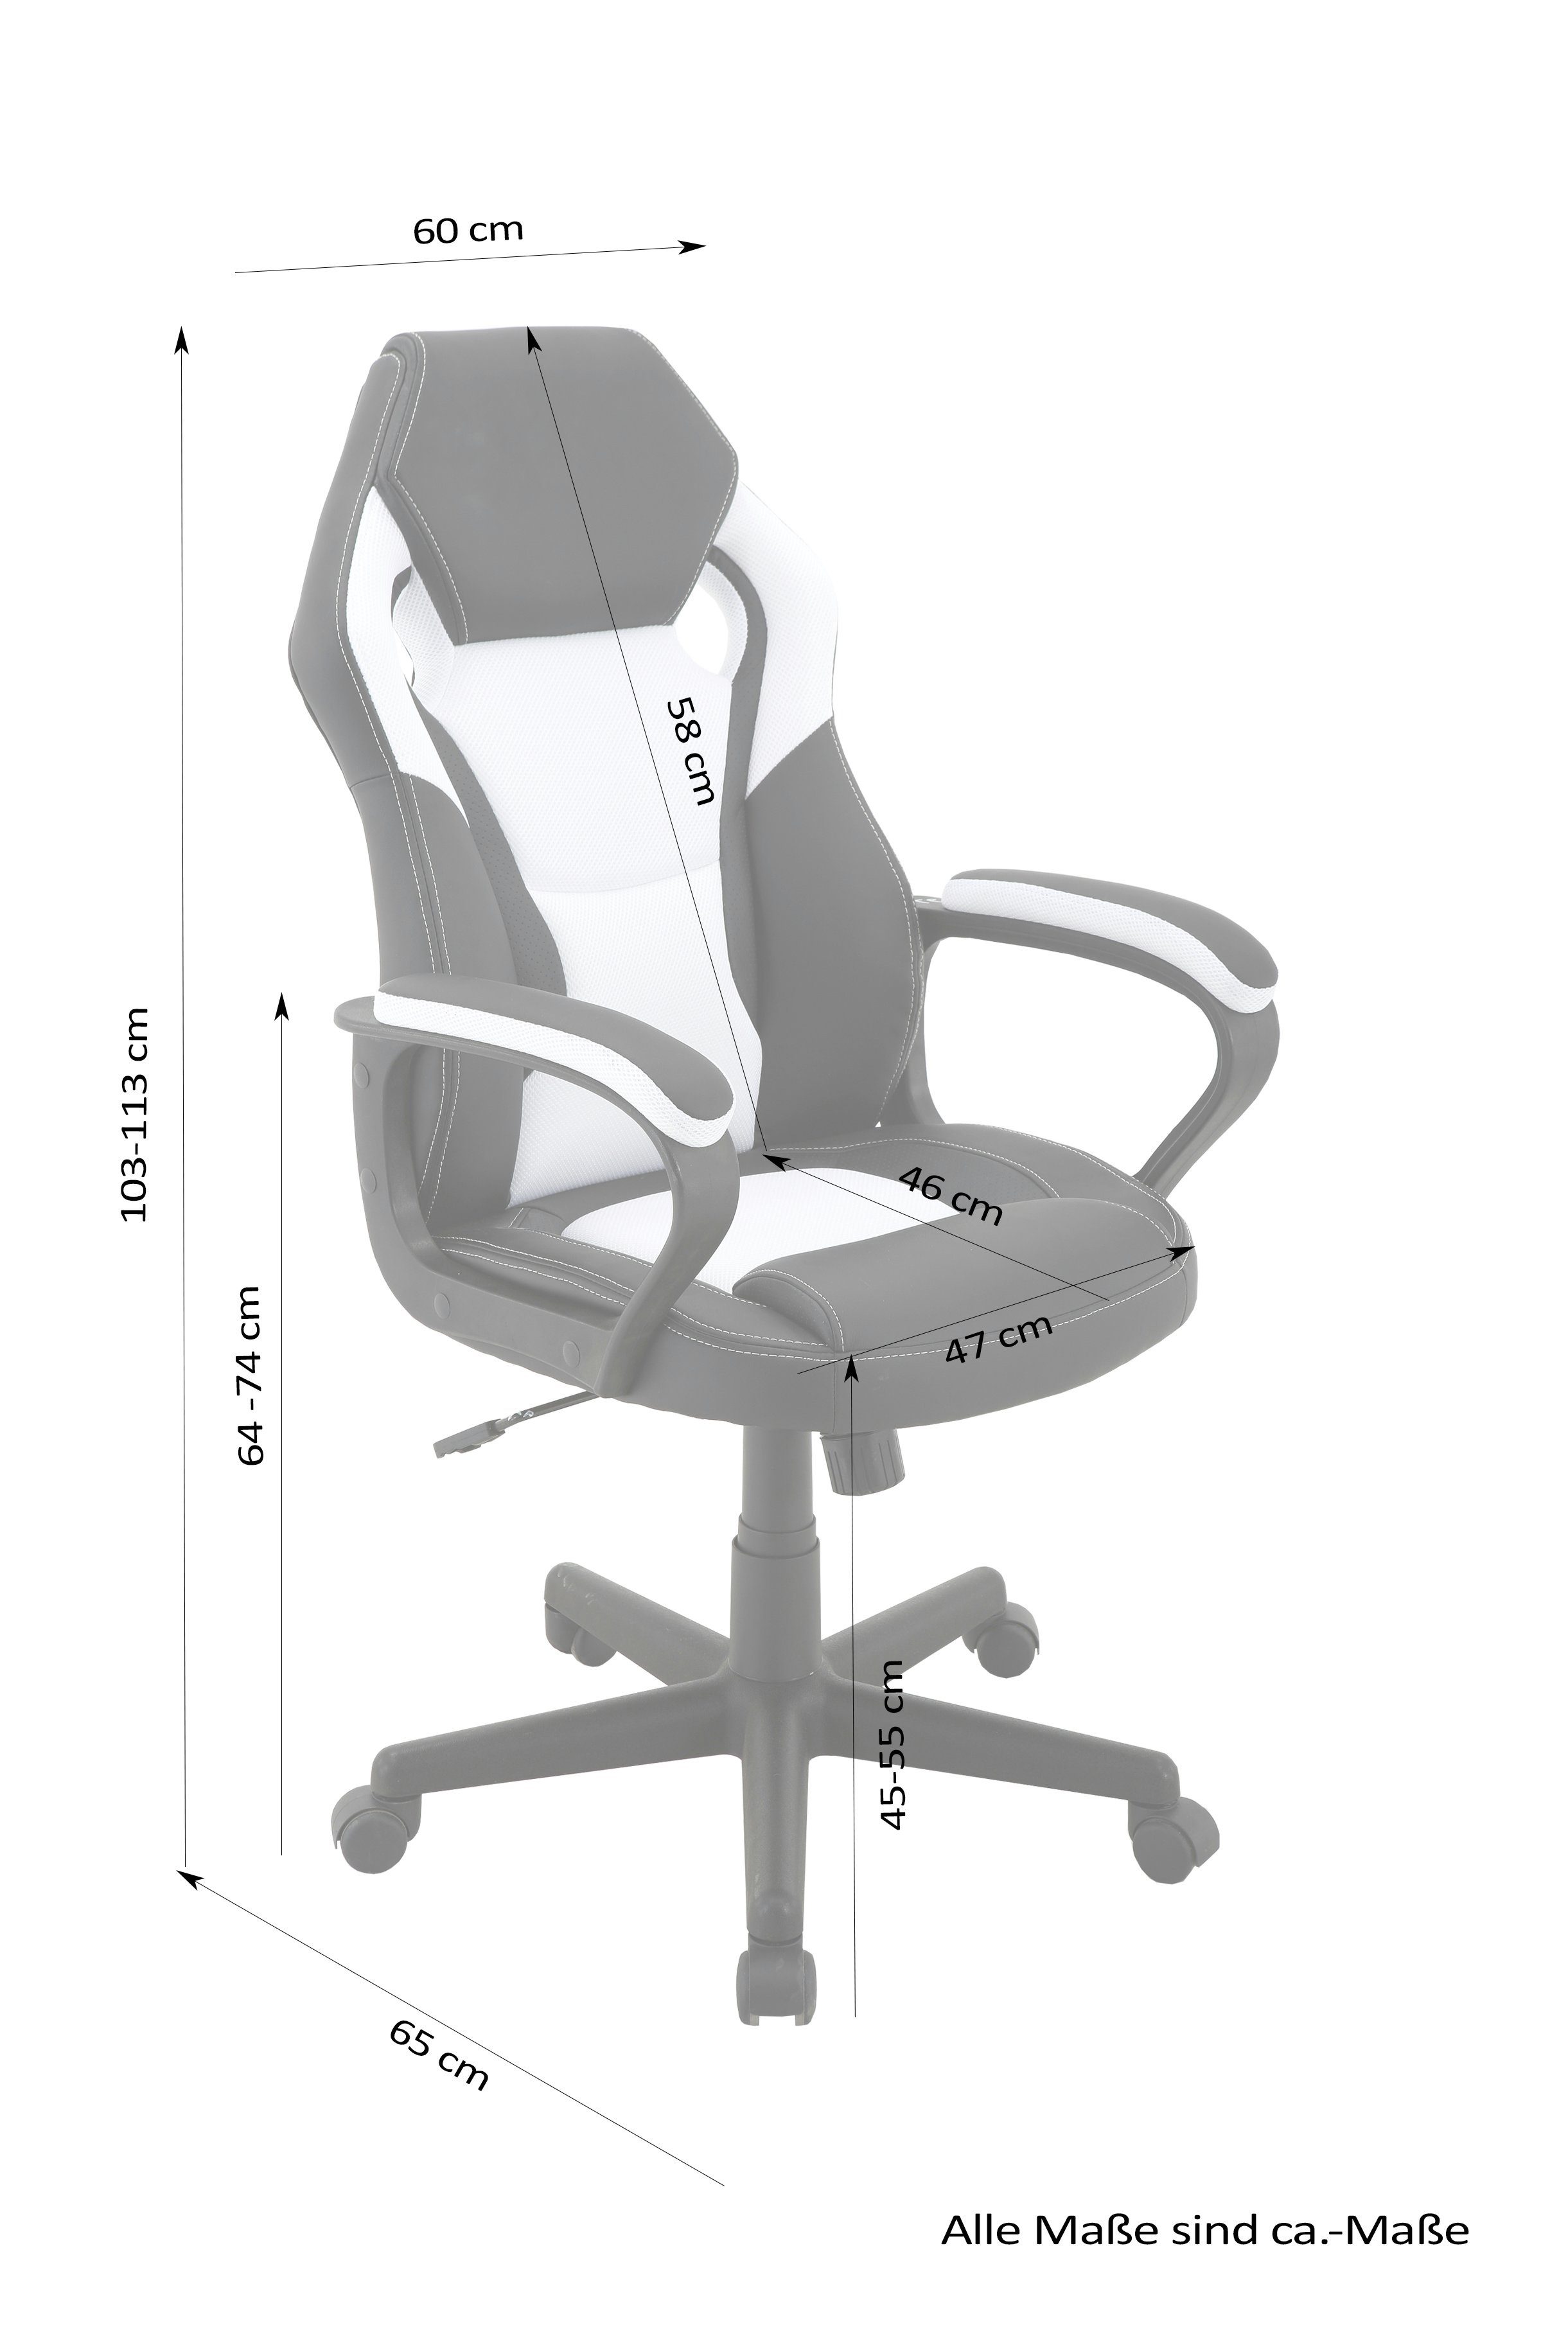 Farben Gaming-Stuhl Matteo, verschiedenen schwarz/weiß verstellbarer byLIVING Gaming in Chair,